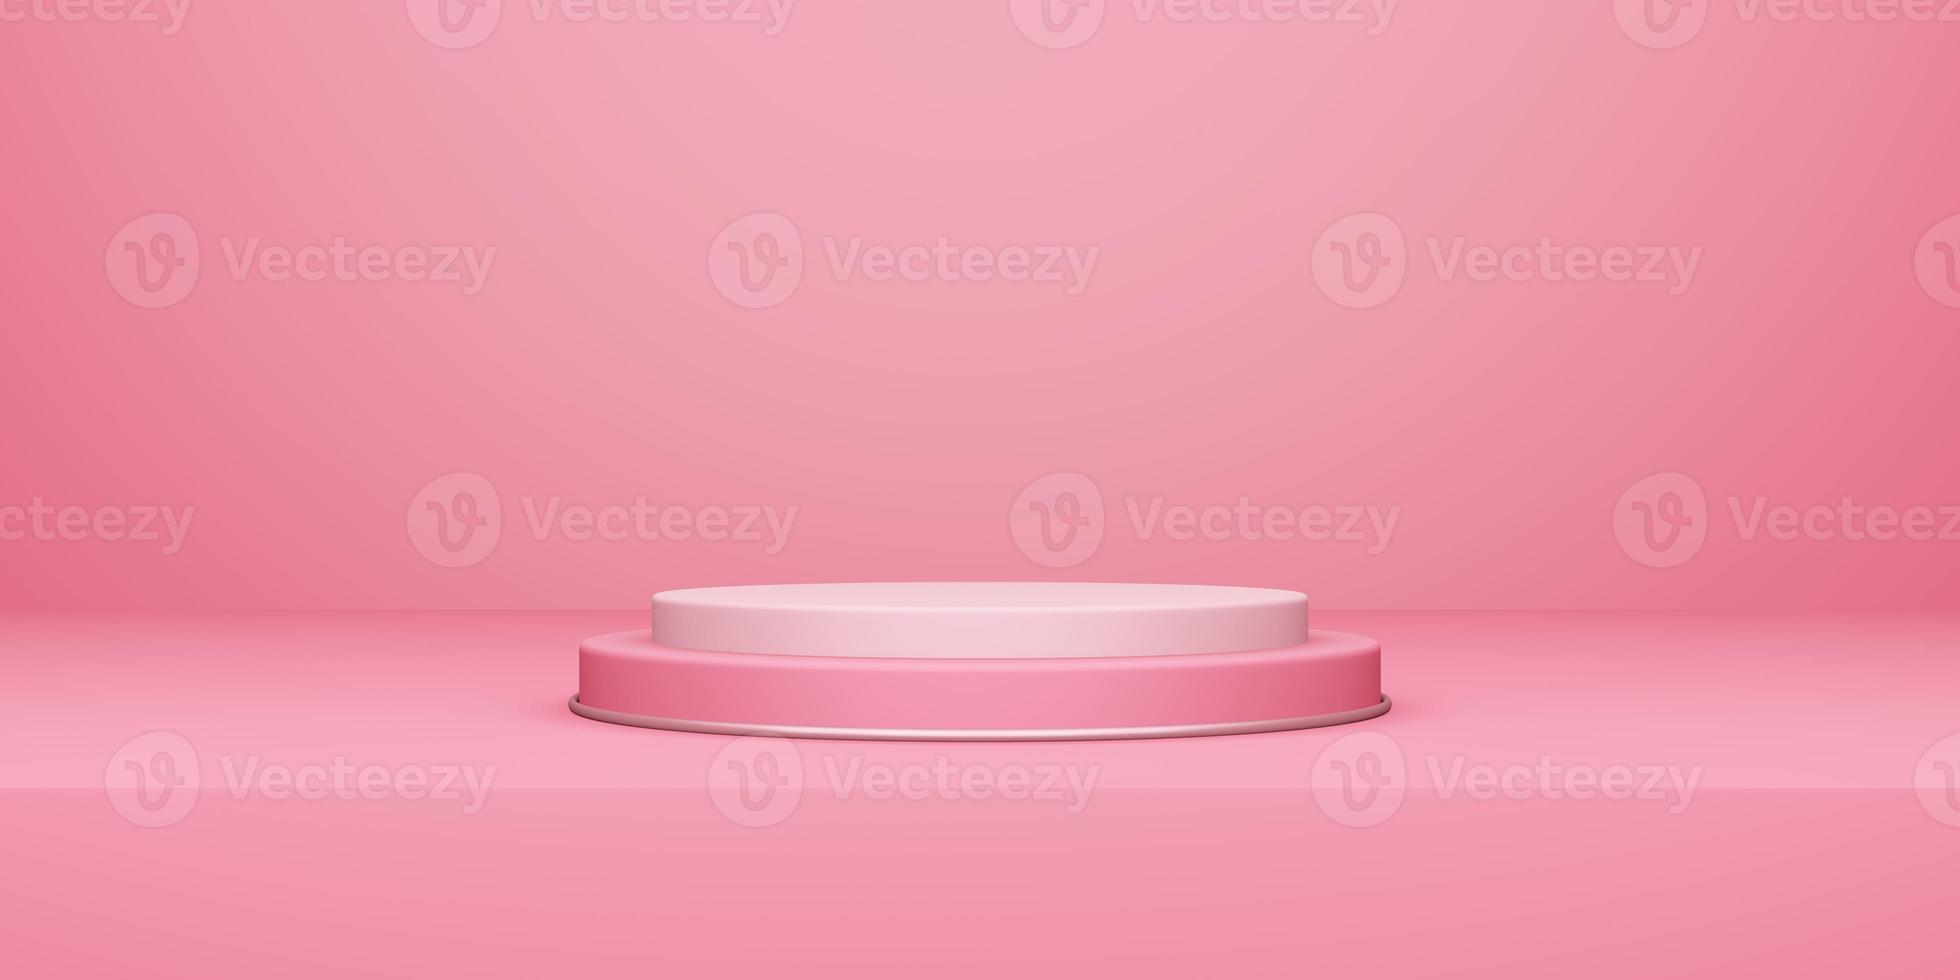 día de san valentín, podio redondo o pedestal con sala de estudio vacía rosa, fondo del producto, maqueta para exhibición de amor foto